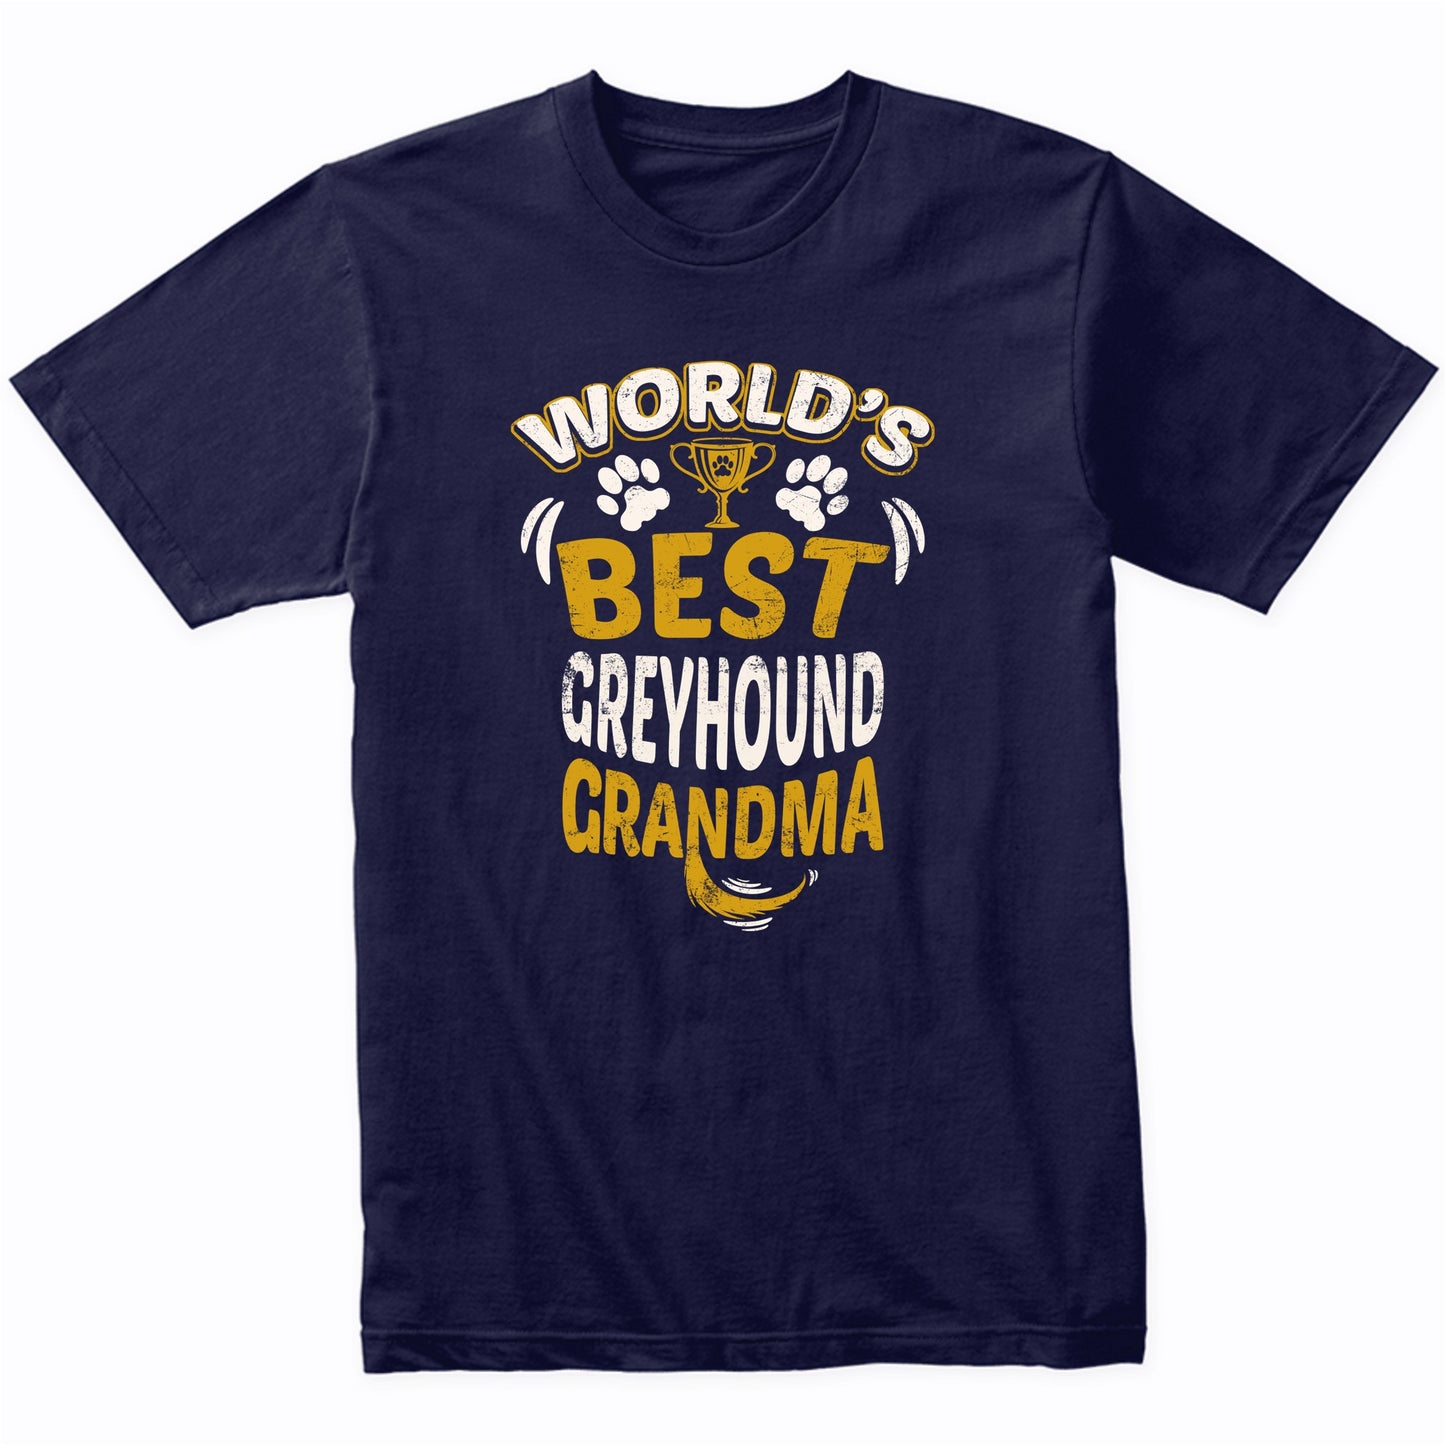 World's Best Greyhound Grandma Graphic T-Shirt